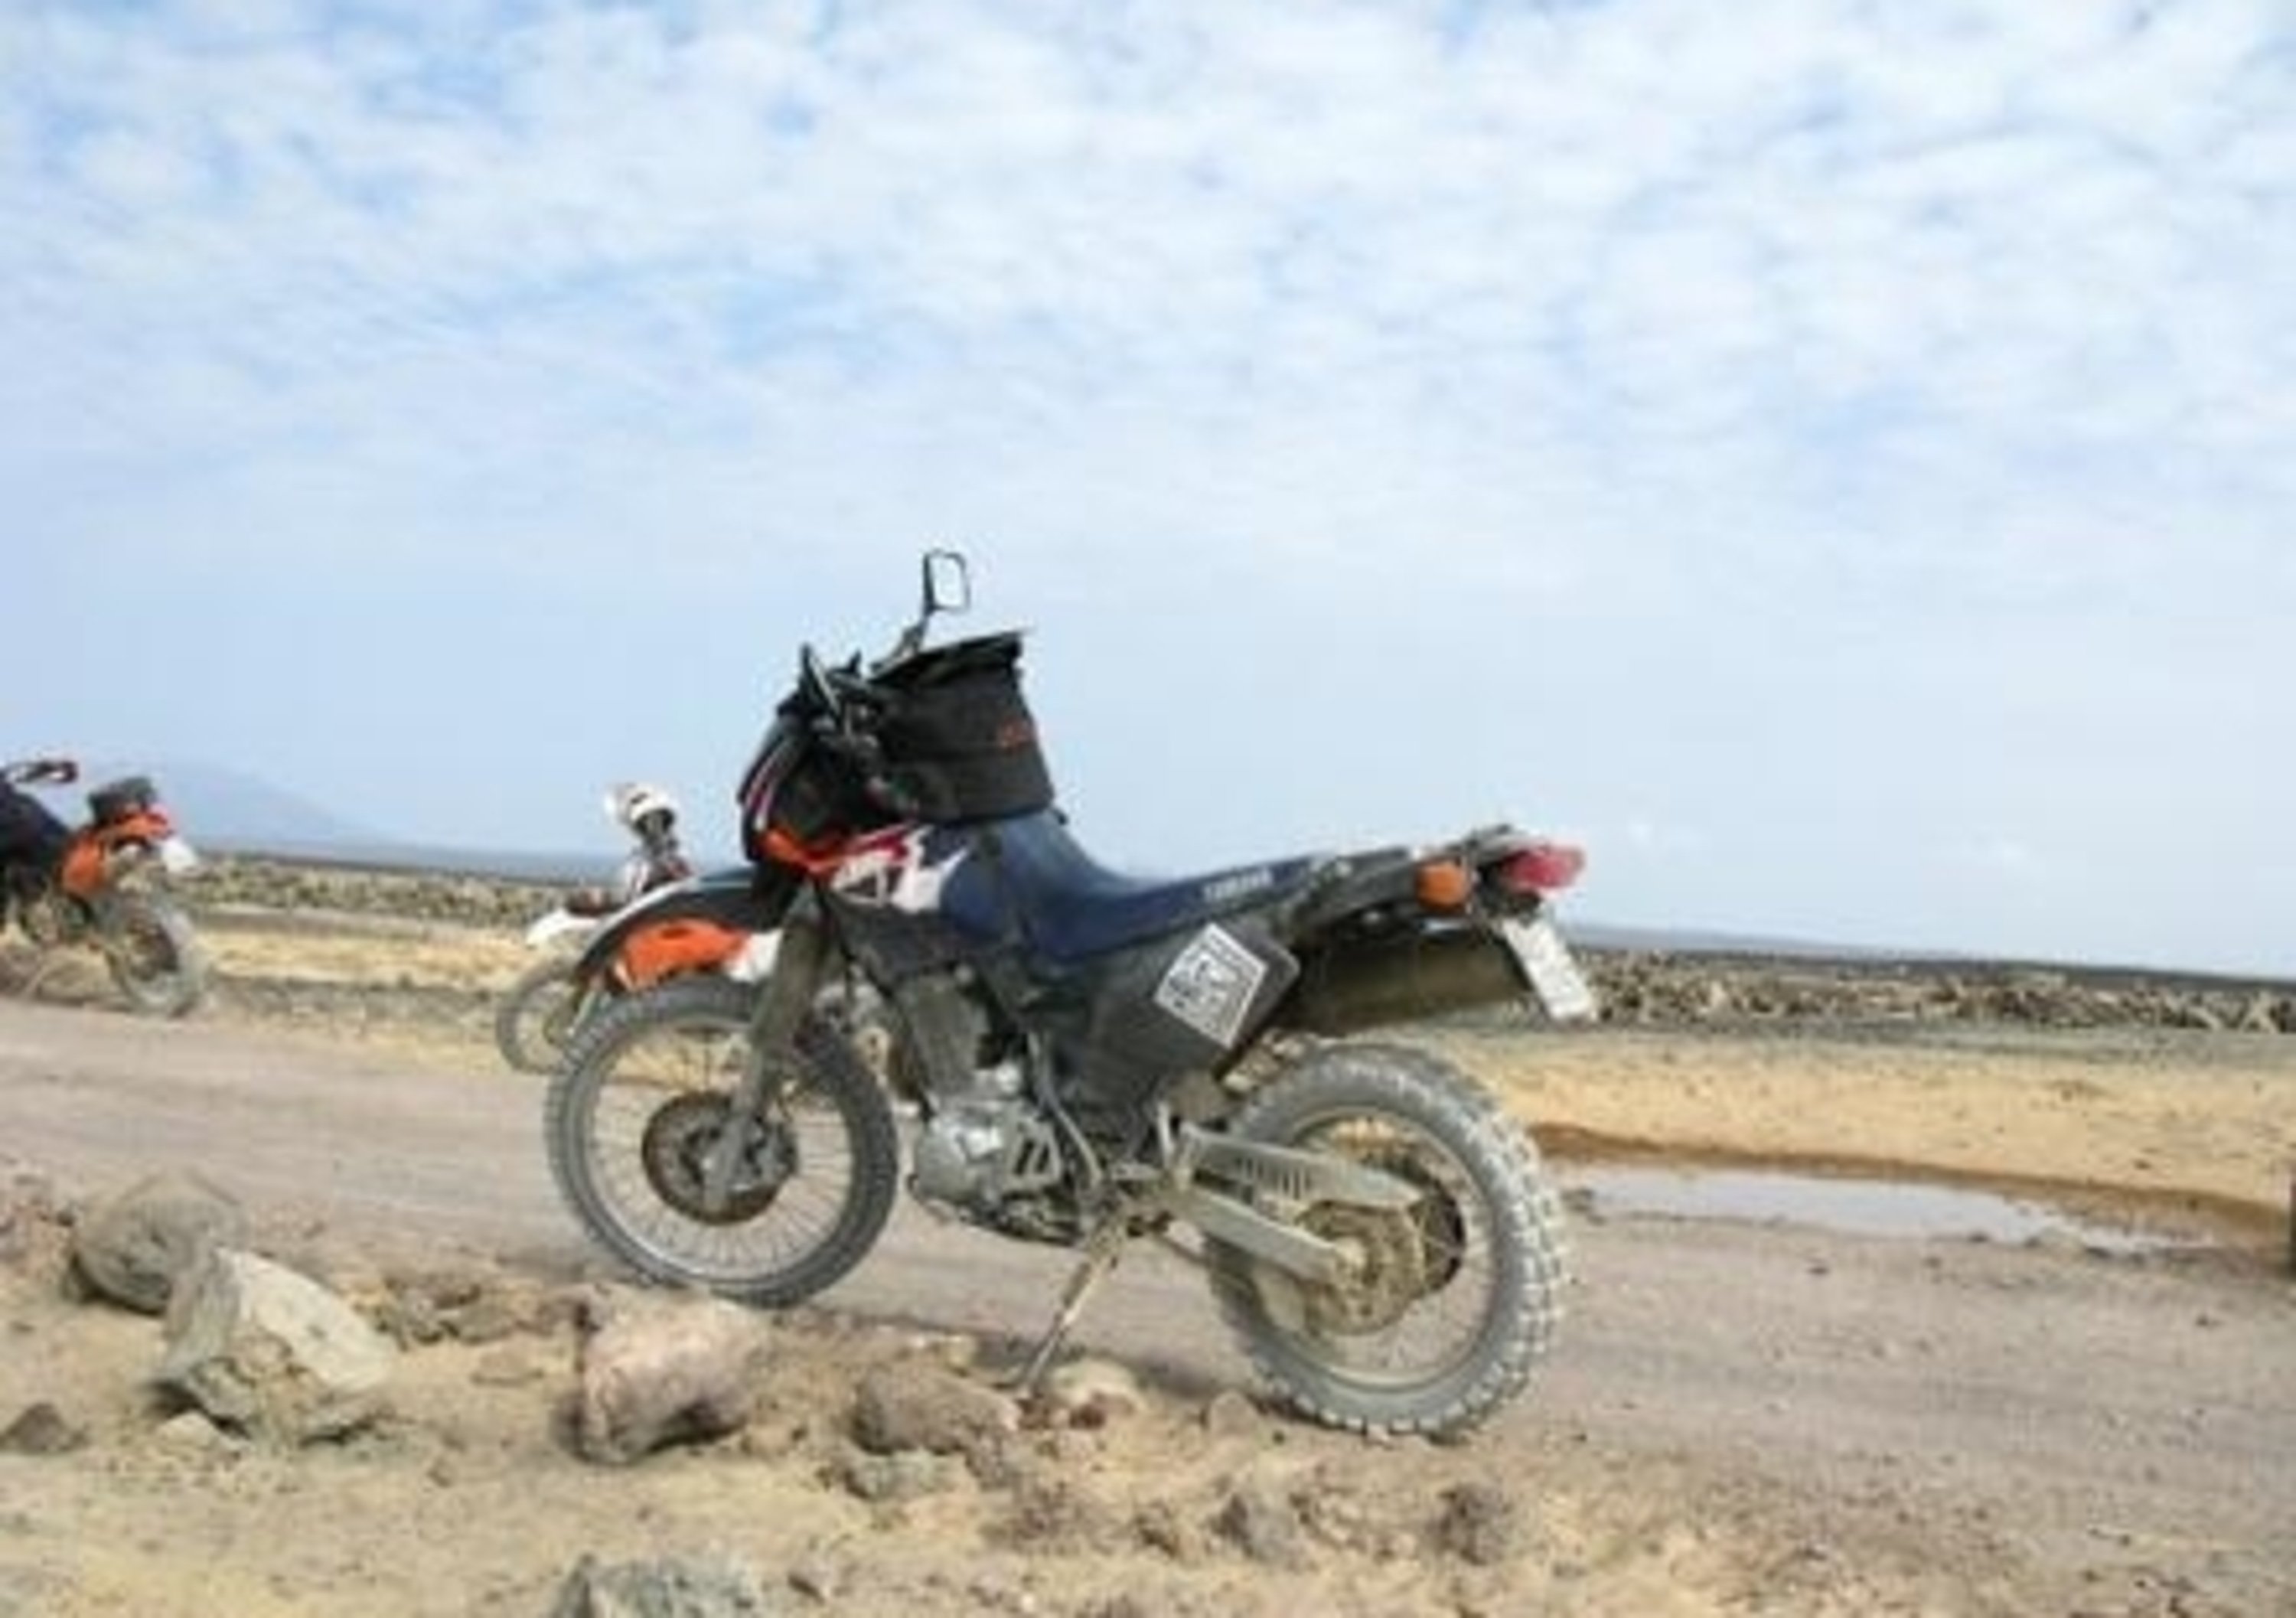 Viaggi in moto. Raid in Etiopia